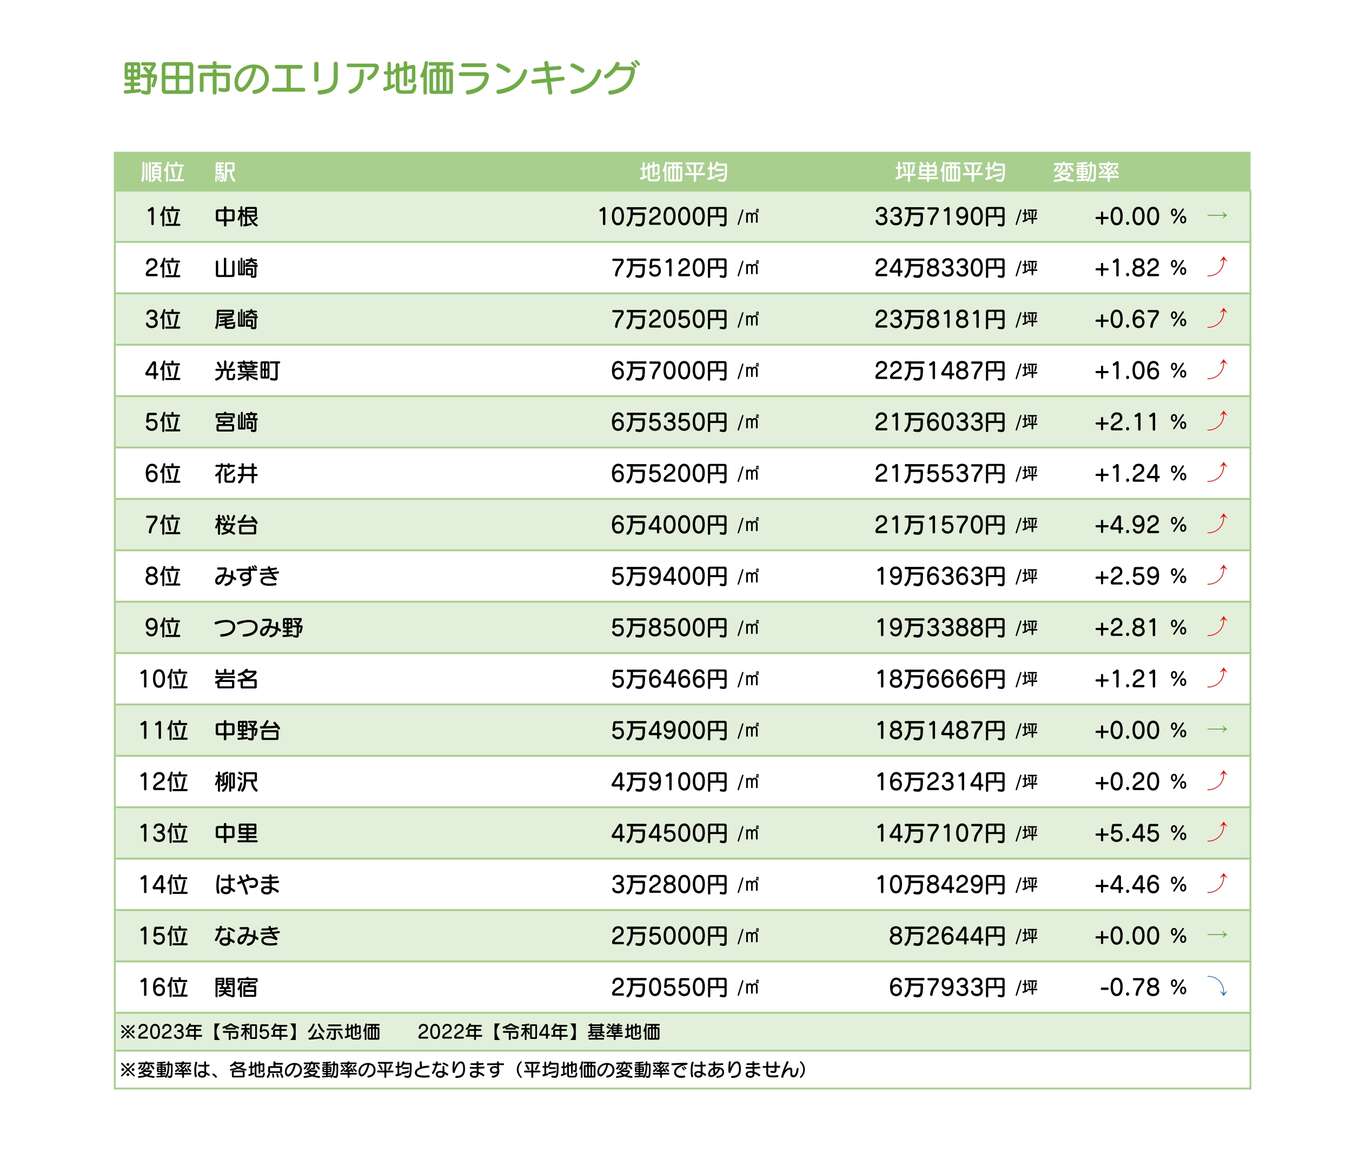 野田市内のエリア地価ランキング表